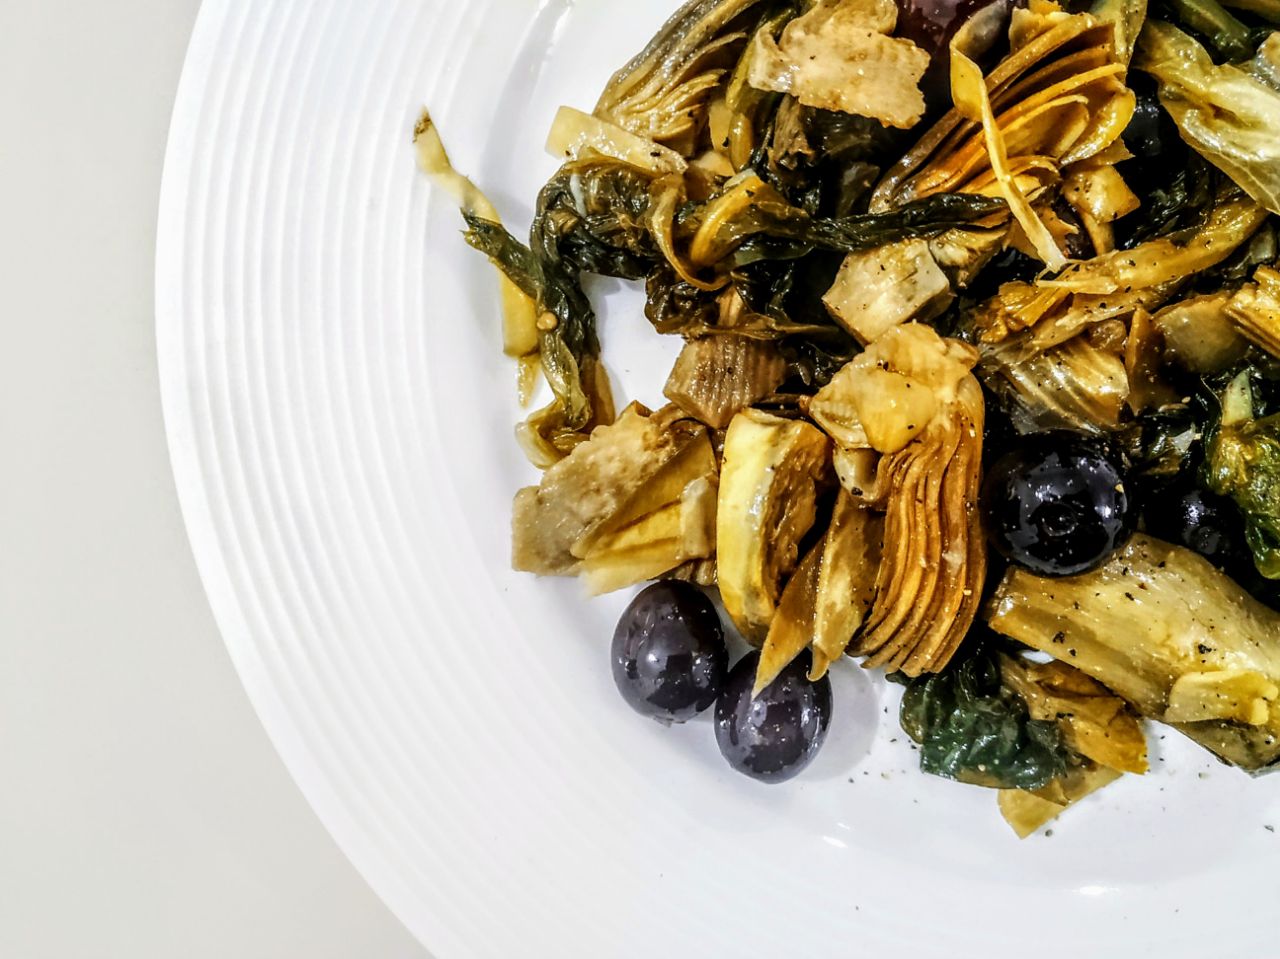 Contorni senza burro e senza lattosio: carciofi e scarola trifolati in padella con olio evo e olive itrana